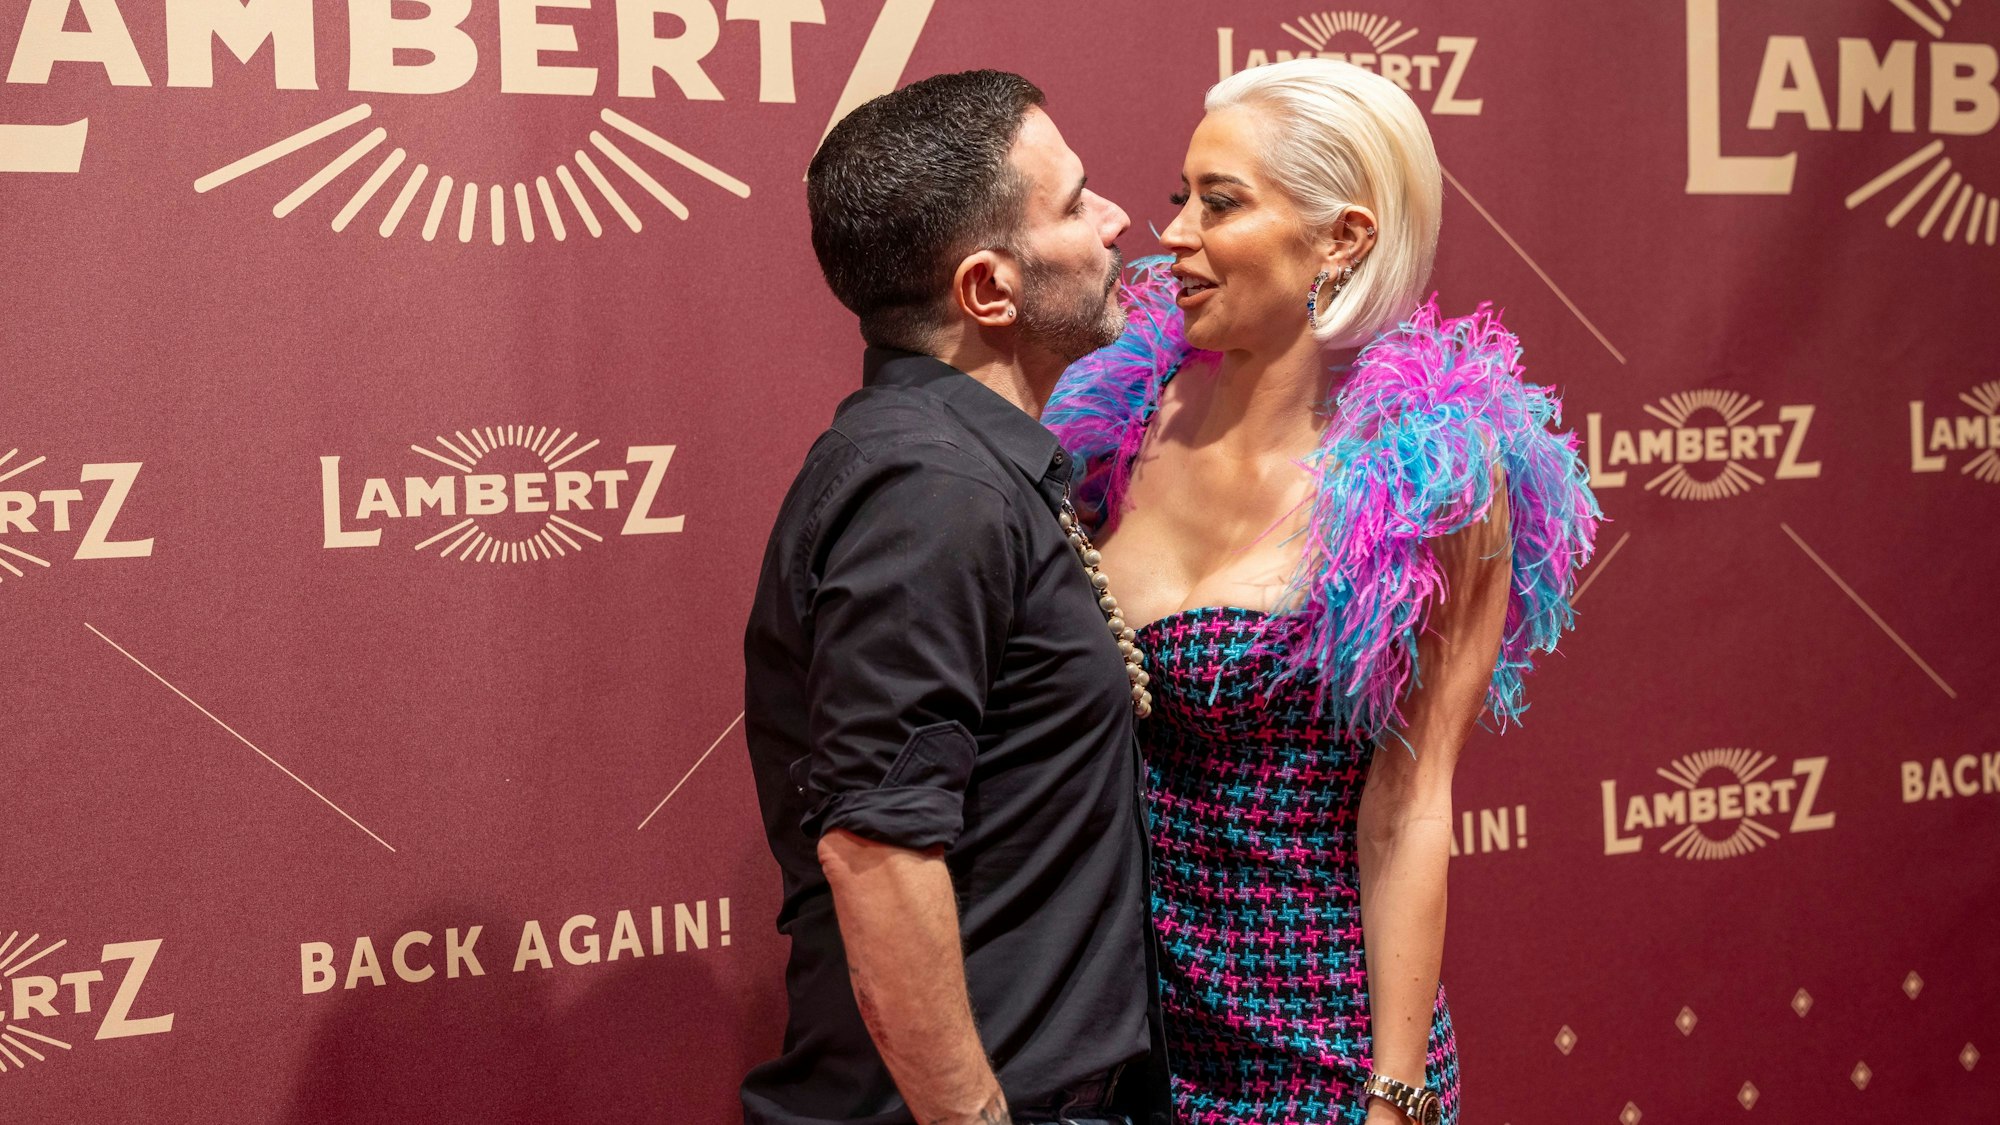 Sänger Marc Terenzi und seine Verlobte Verena Kerth.